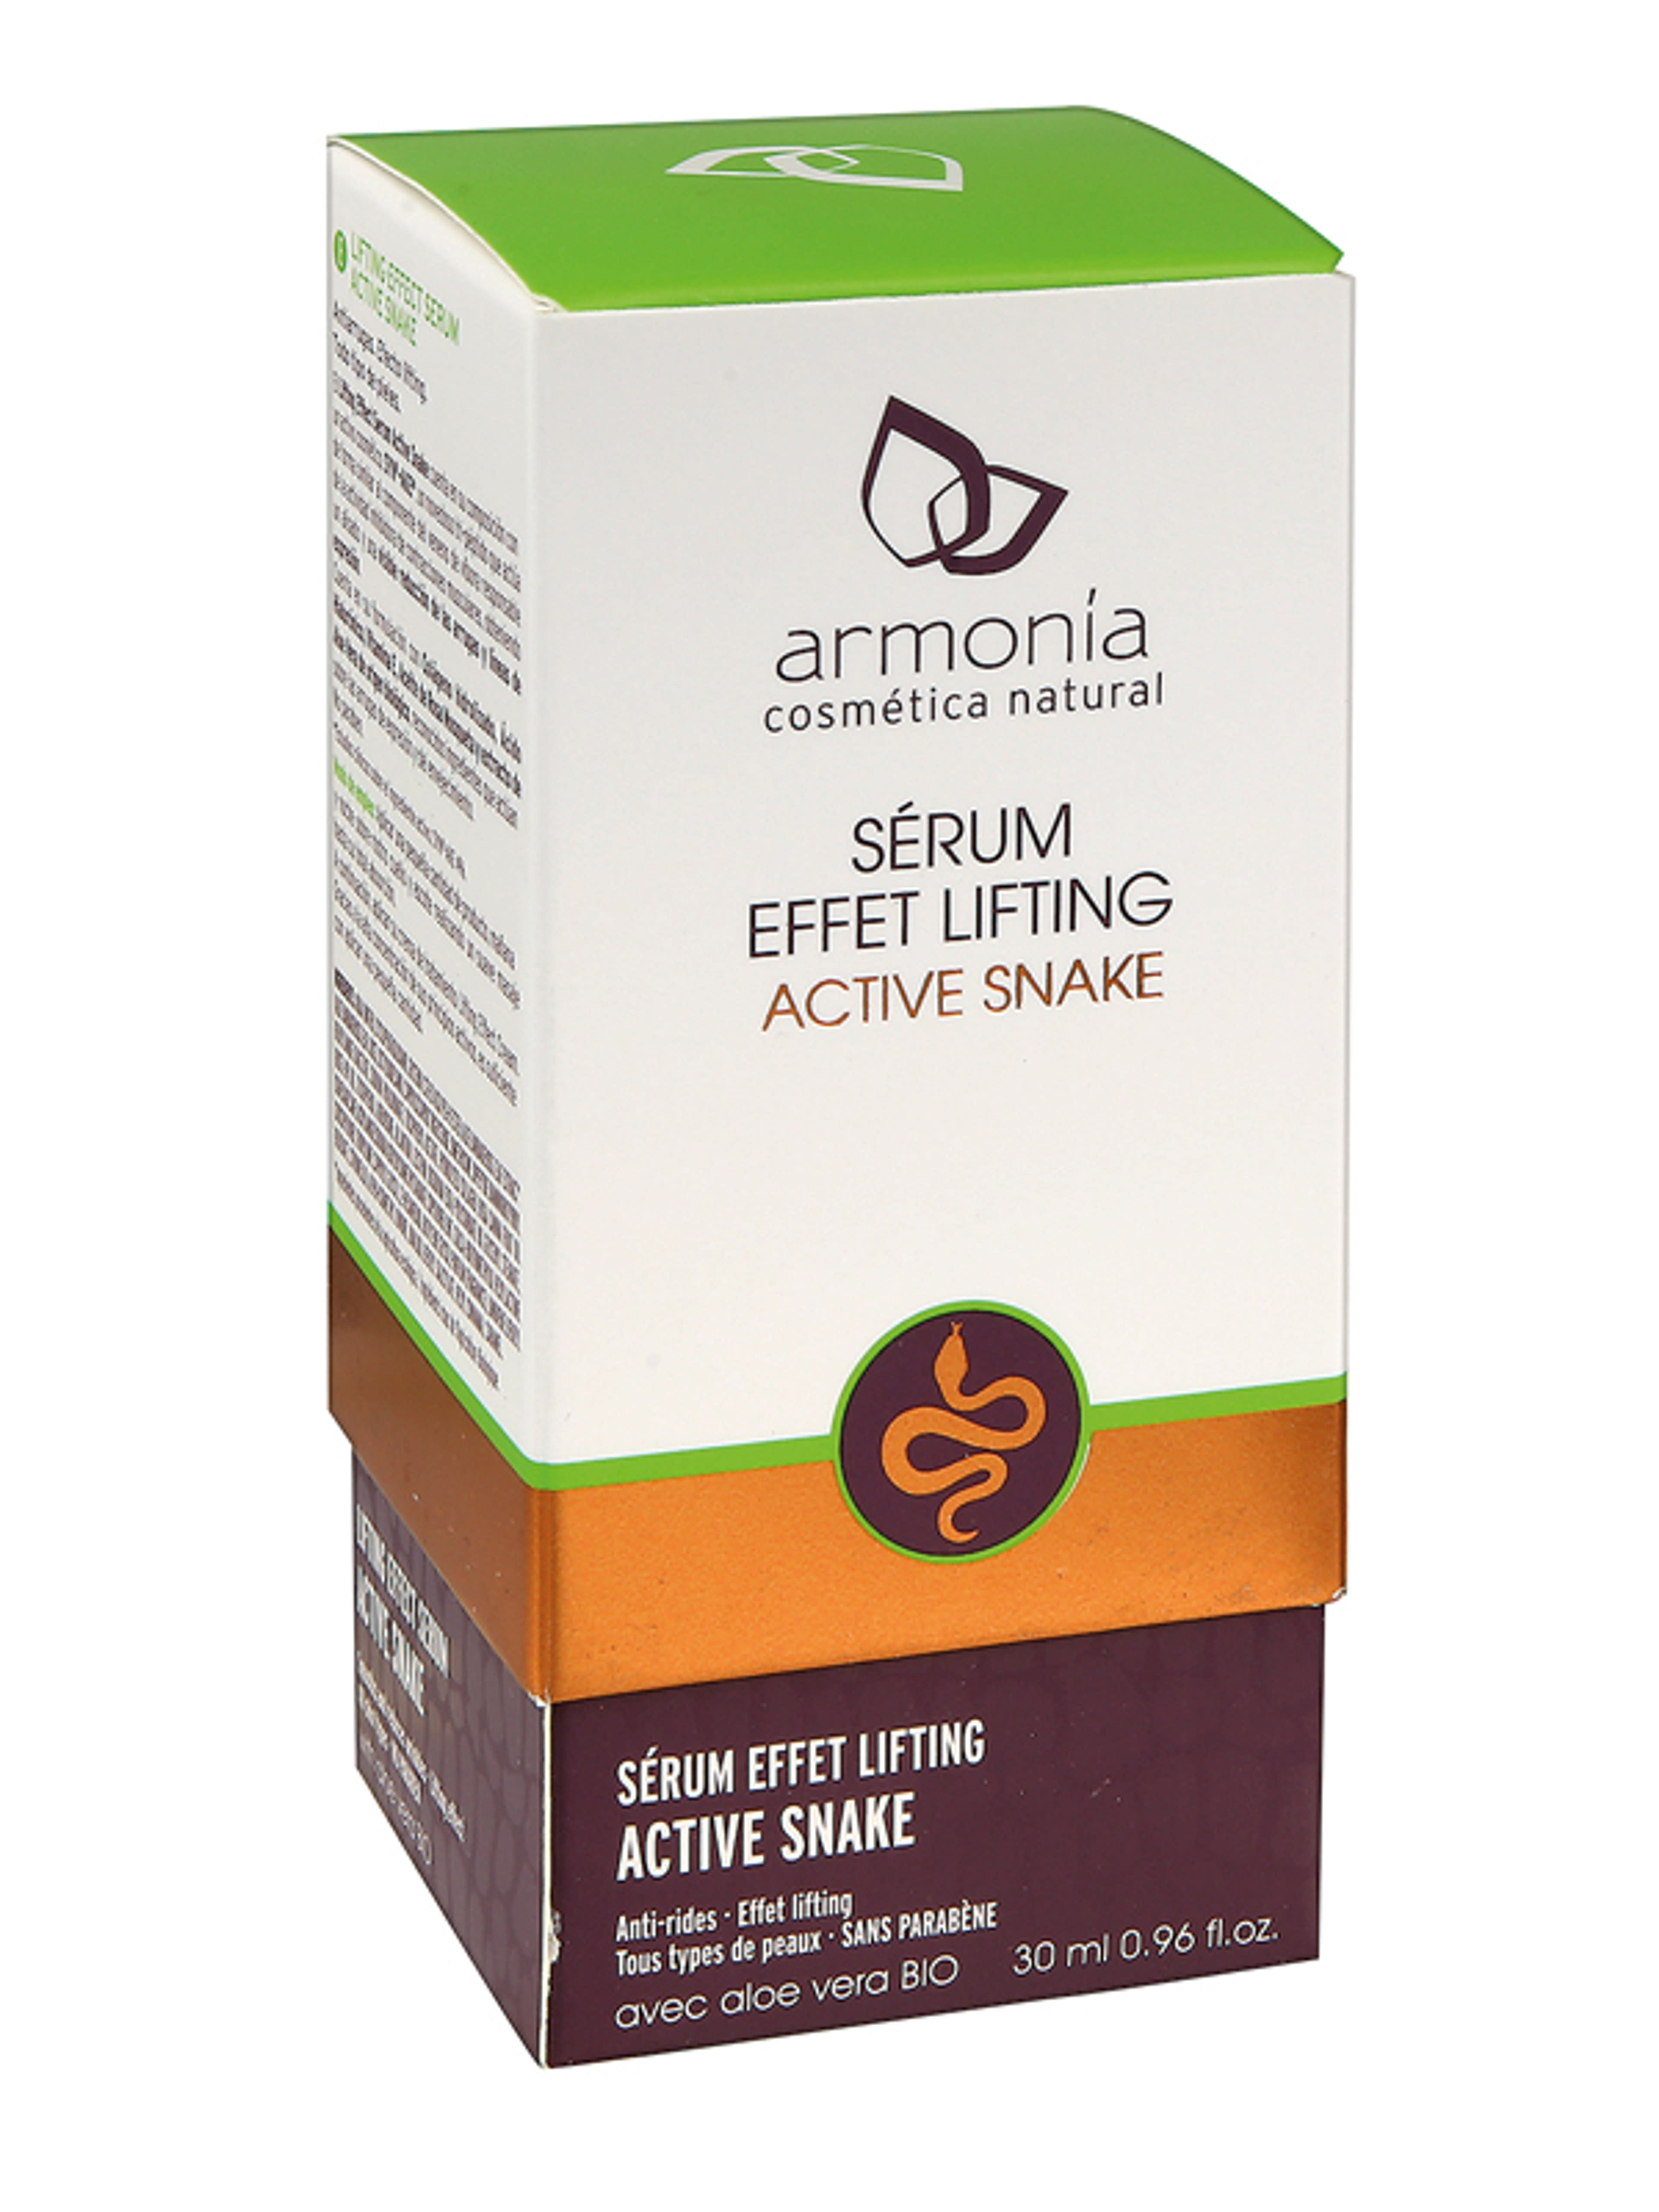 Armonia Active Snake kígyóméreg erős lifting hatású, ránckisimító szérum - 30 ml